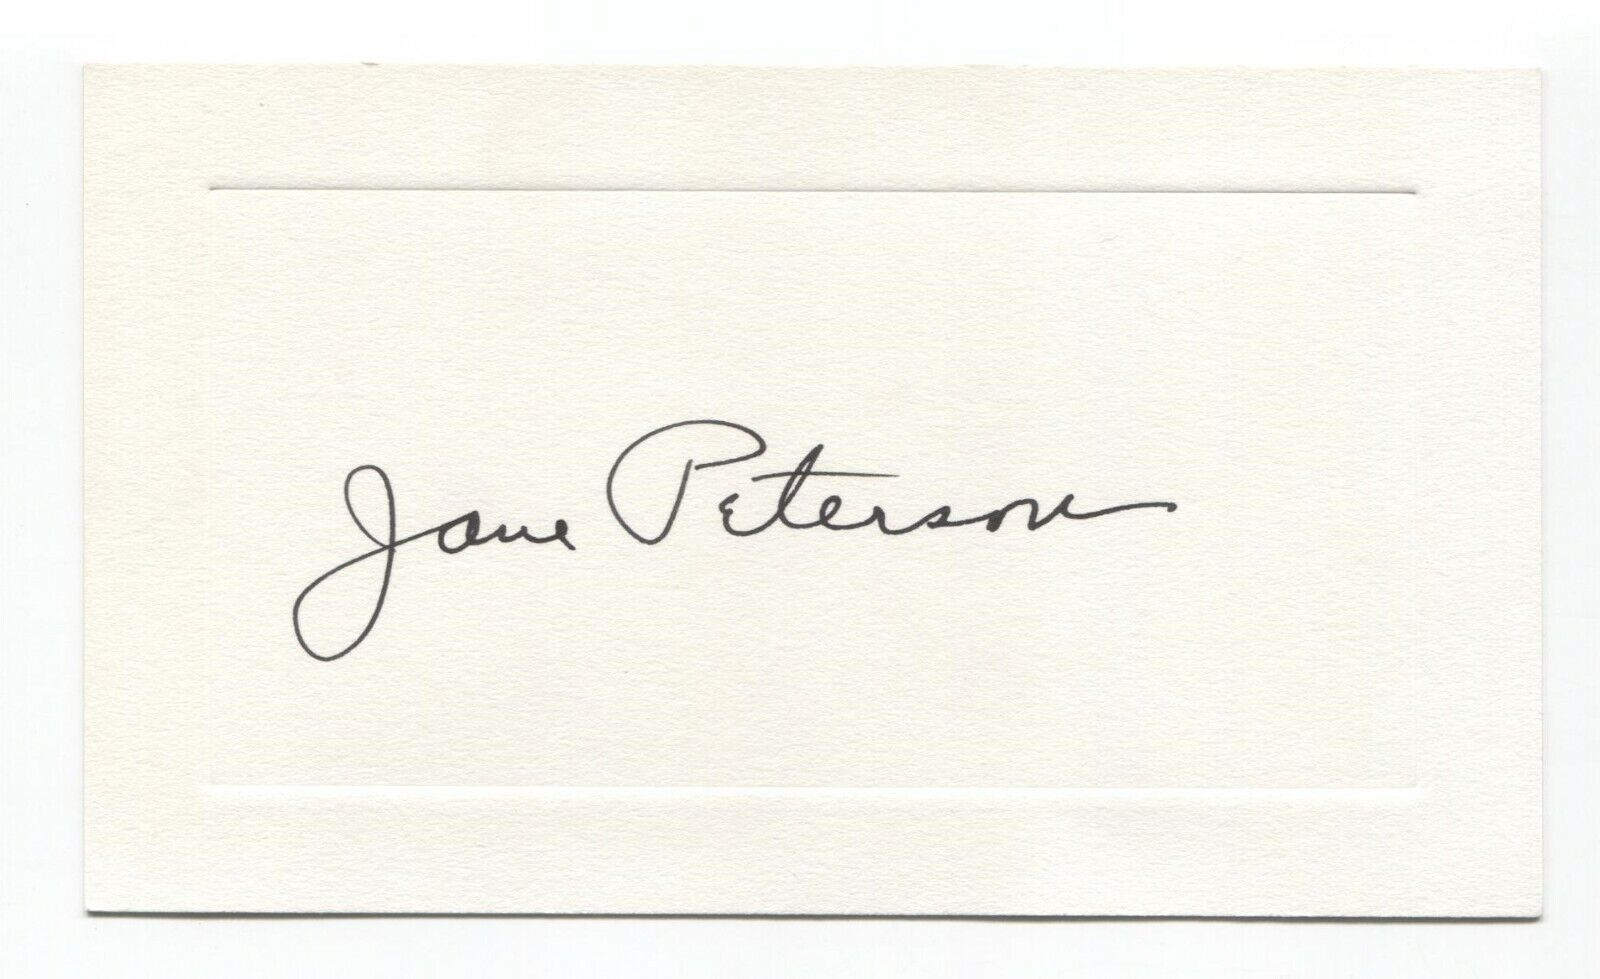 Jane Peterson Signed Card Autographed Vintage Signature Artist Painter